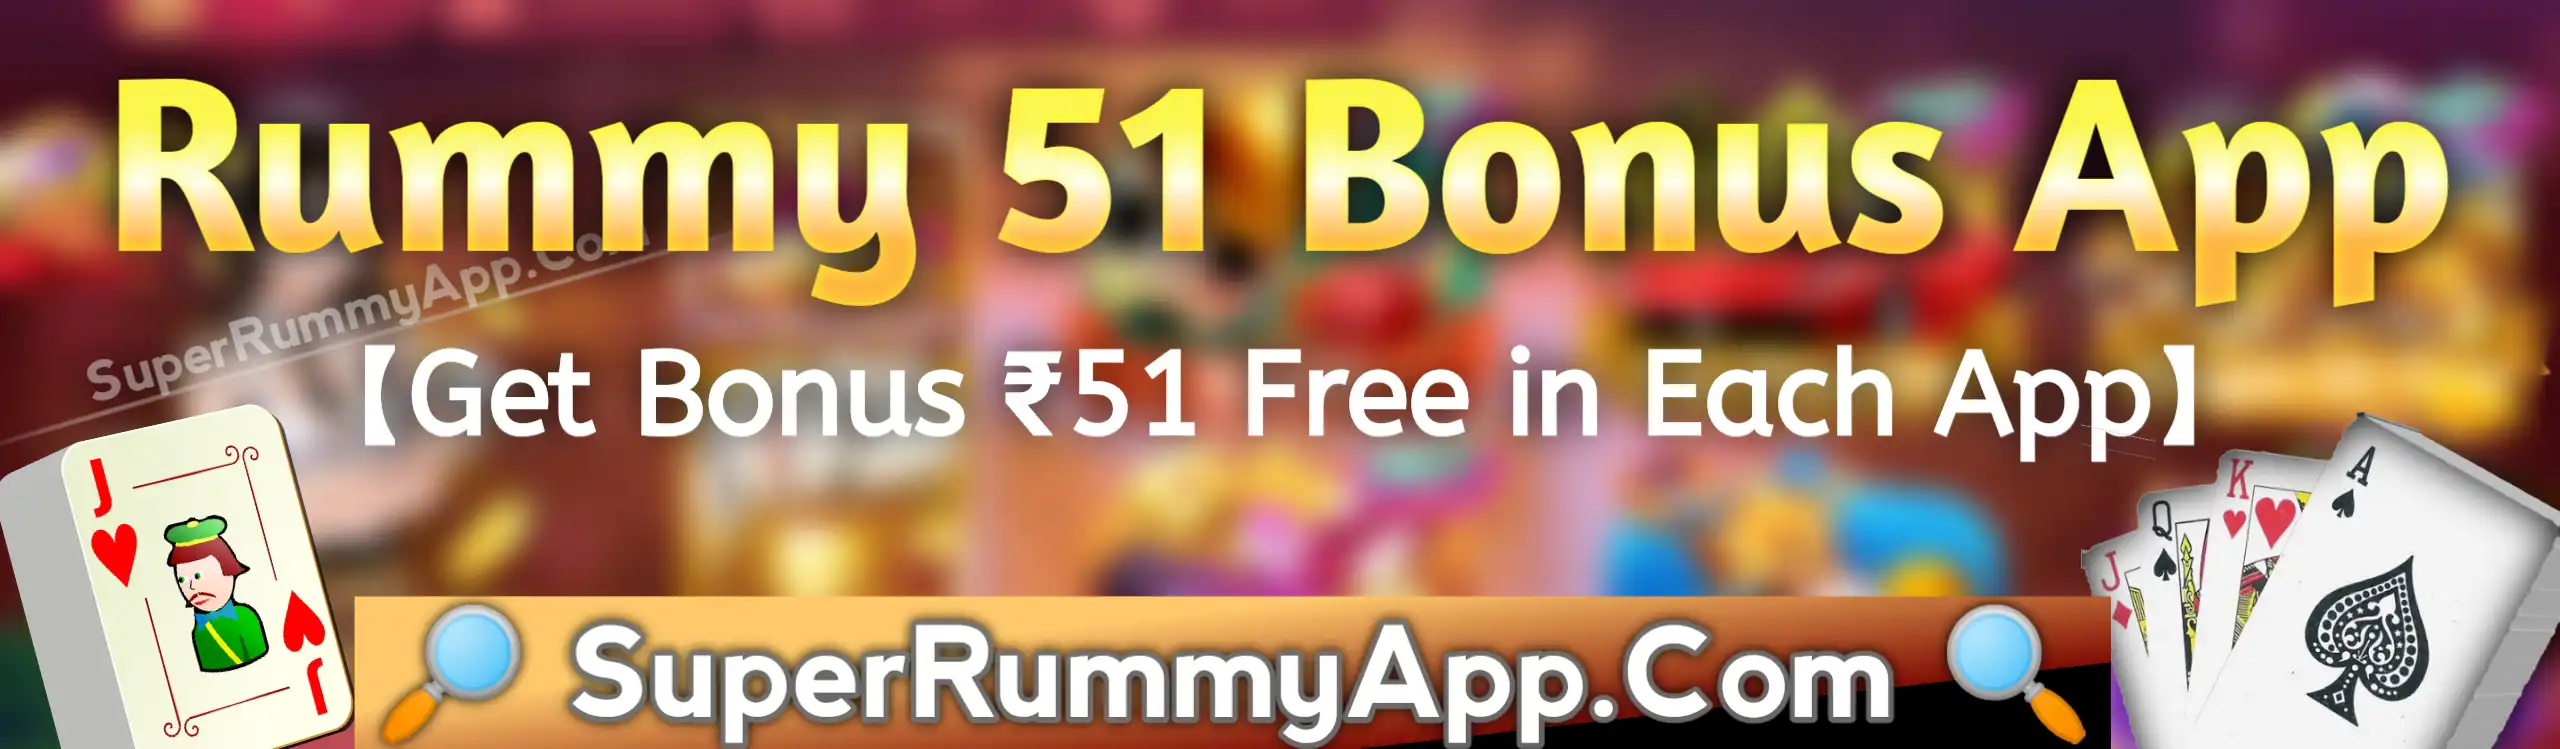 Rummy 51 Bonus App List